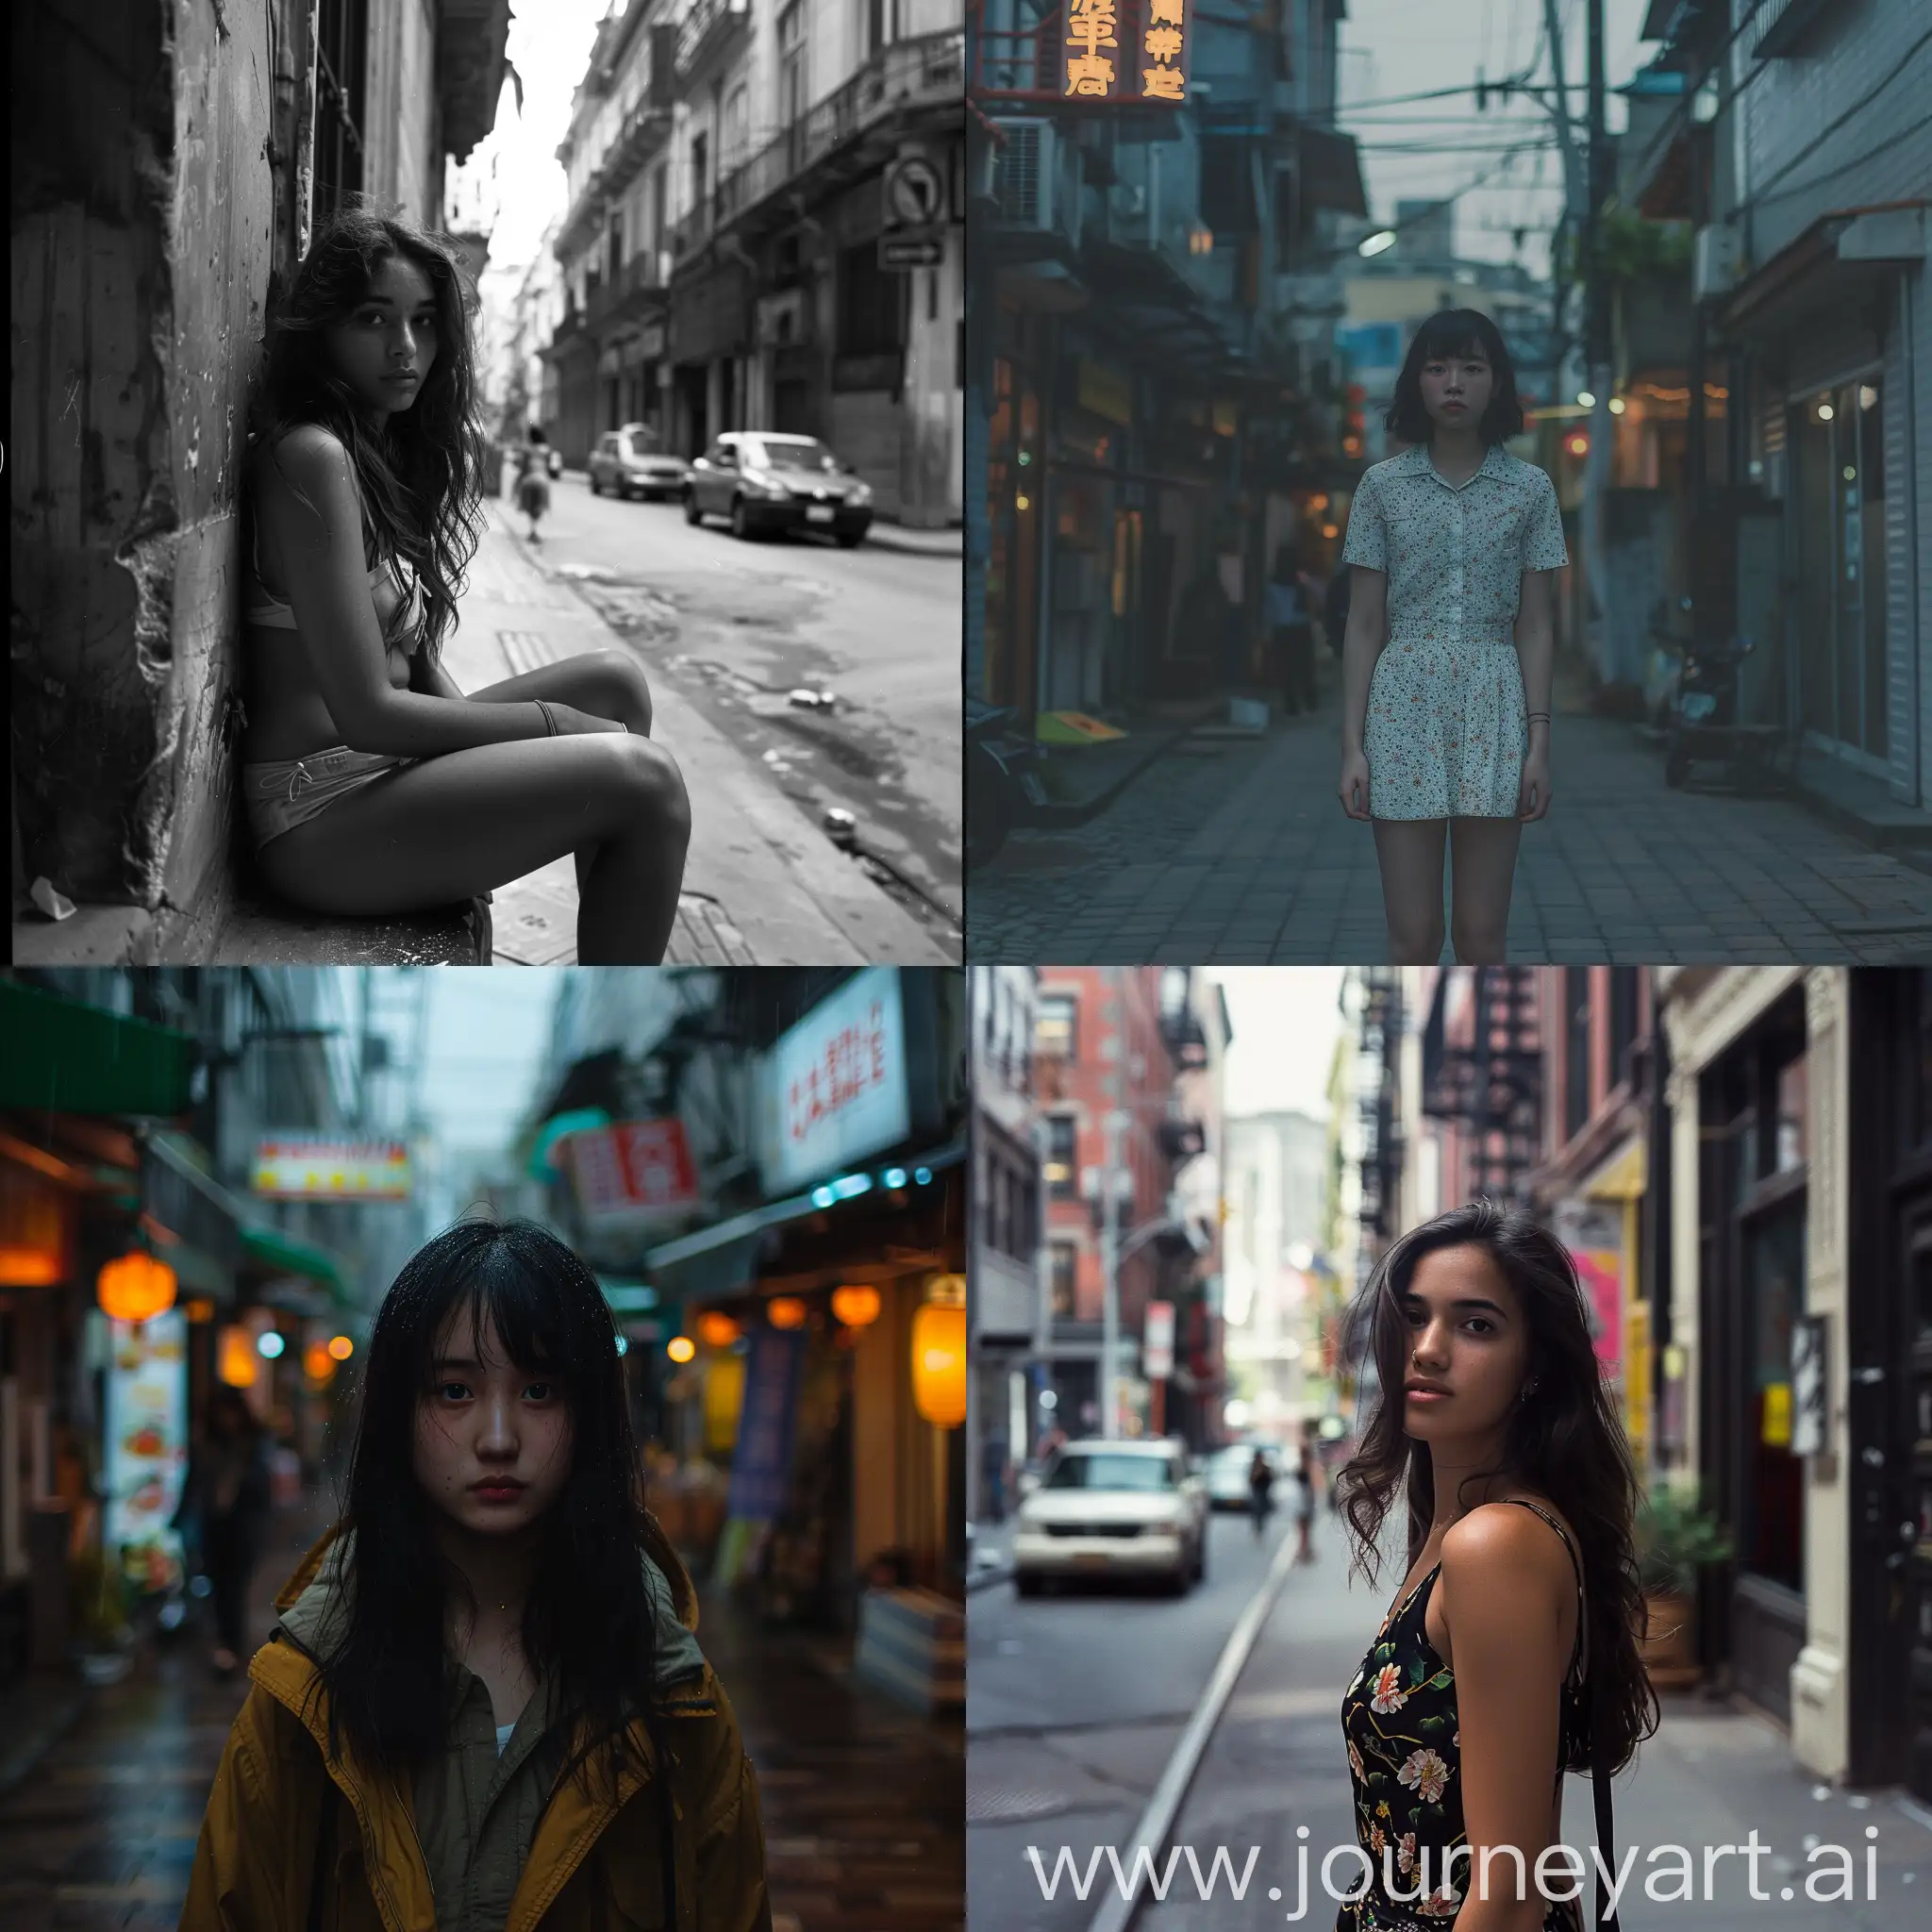 Young-Girl-Walking-Alone-in-Urban-Setting